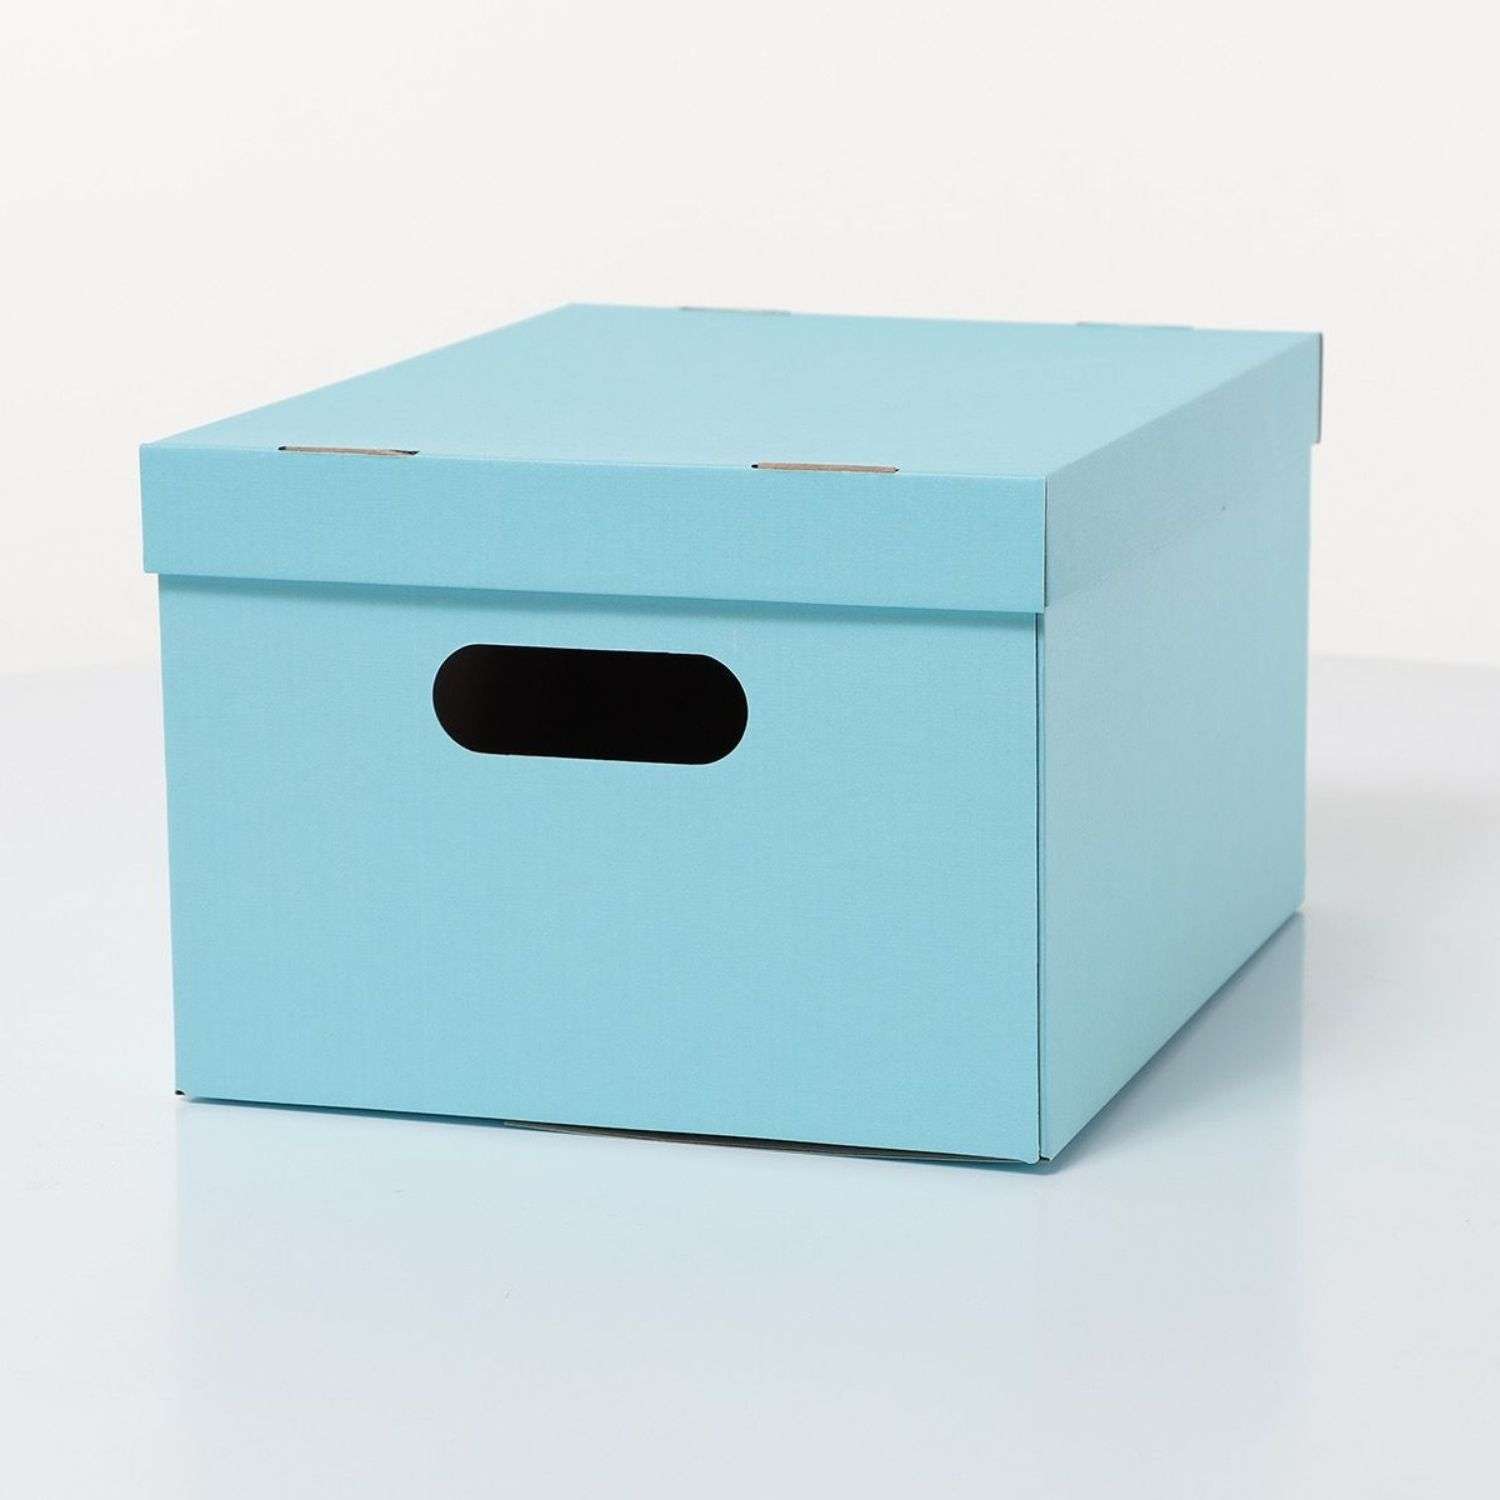 Коробка для хранения Детская Вселенная Картонная 2шт голубая - фото 1